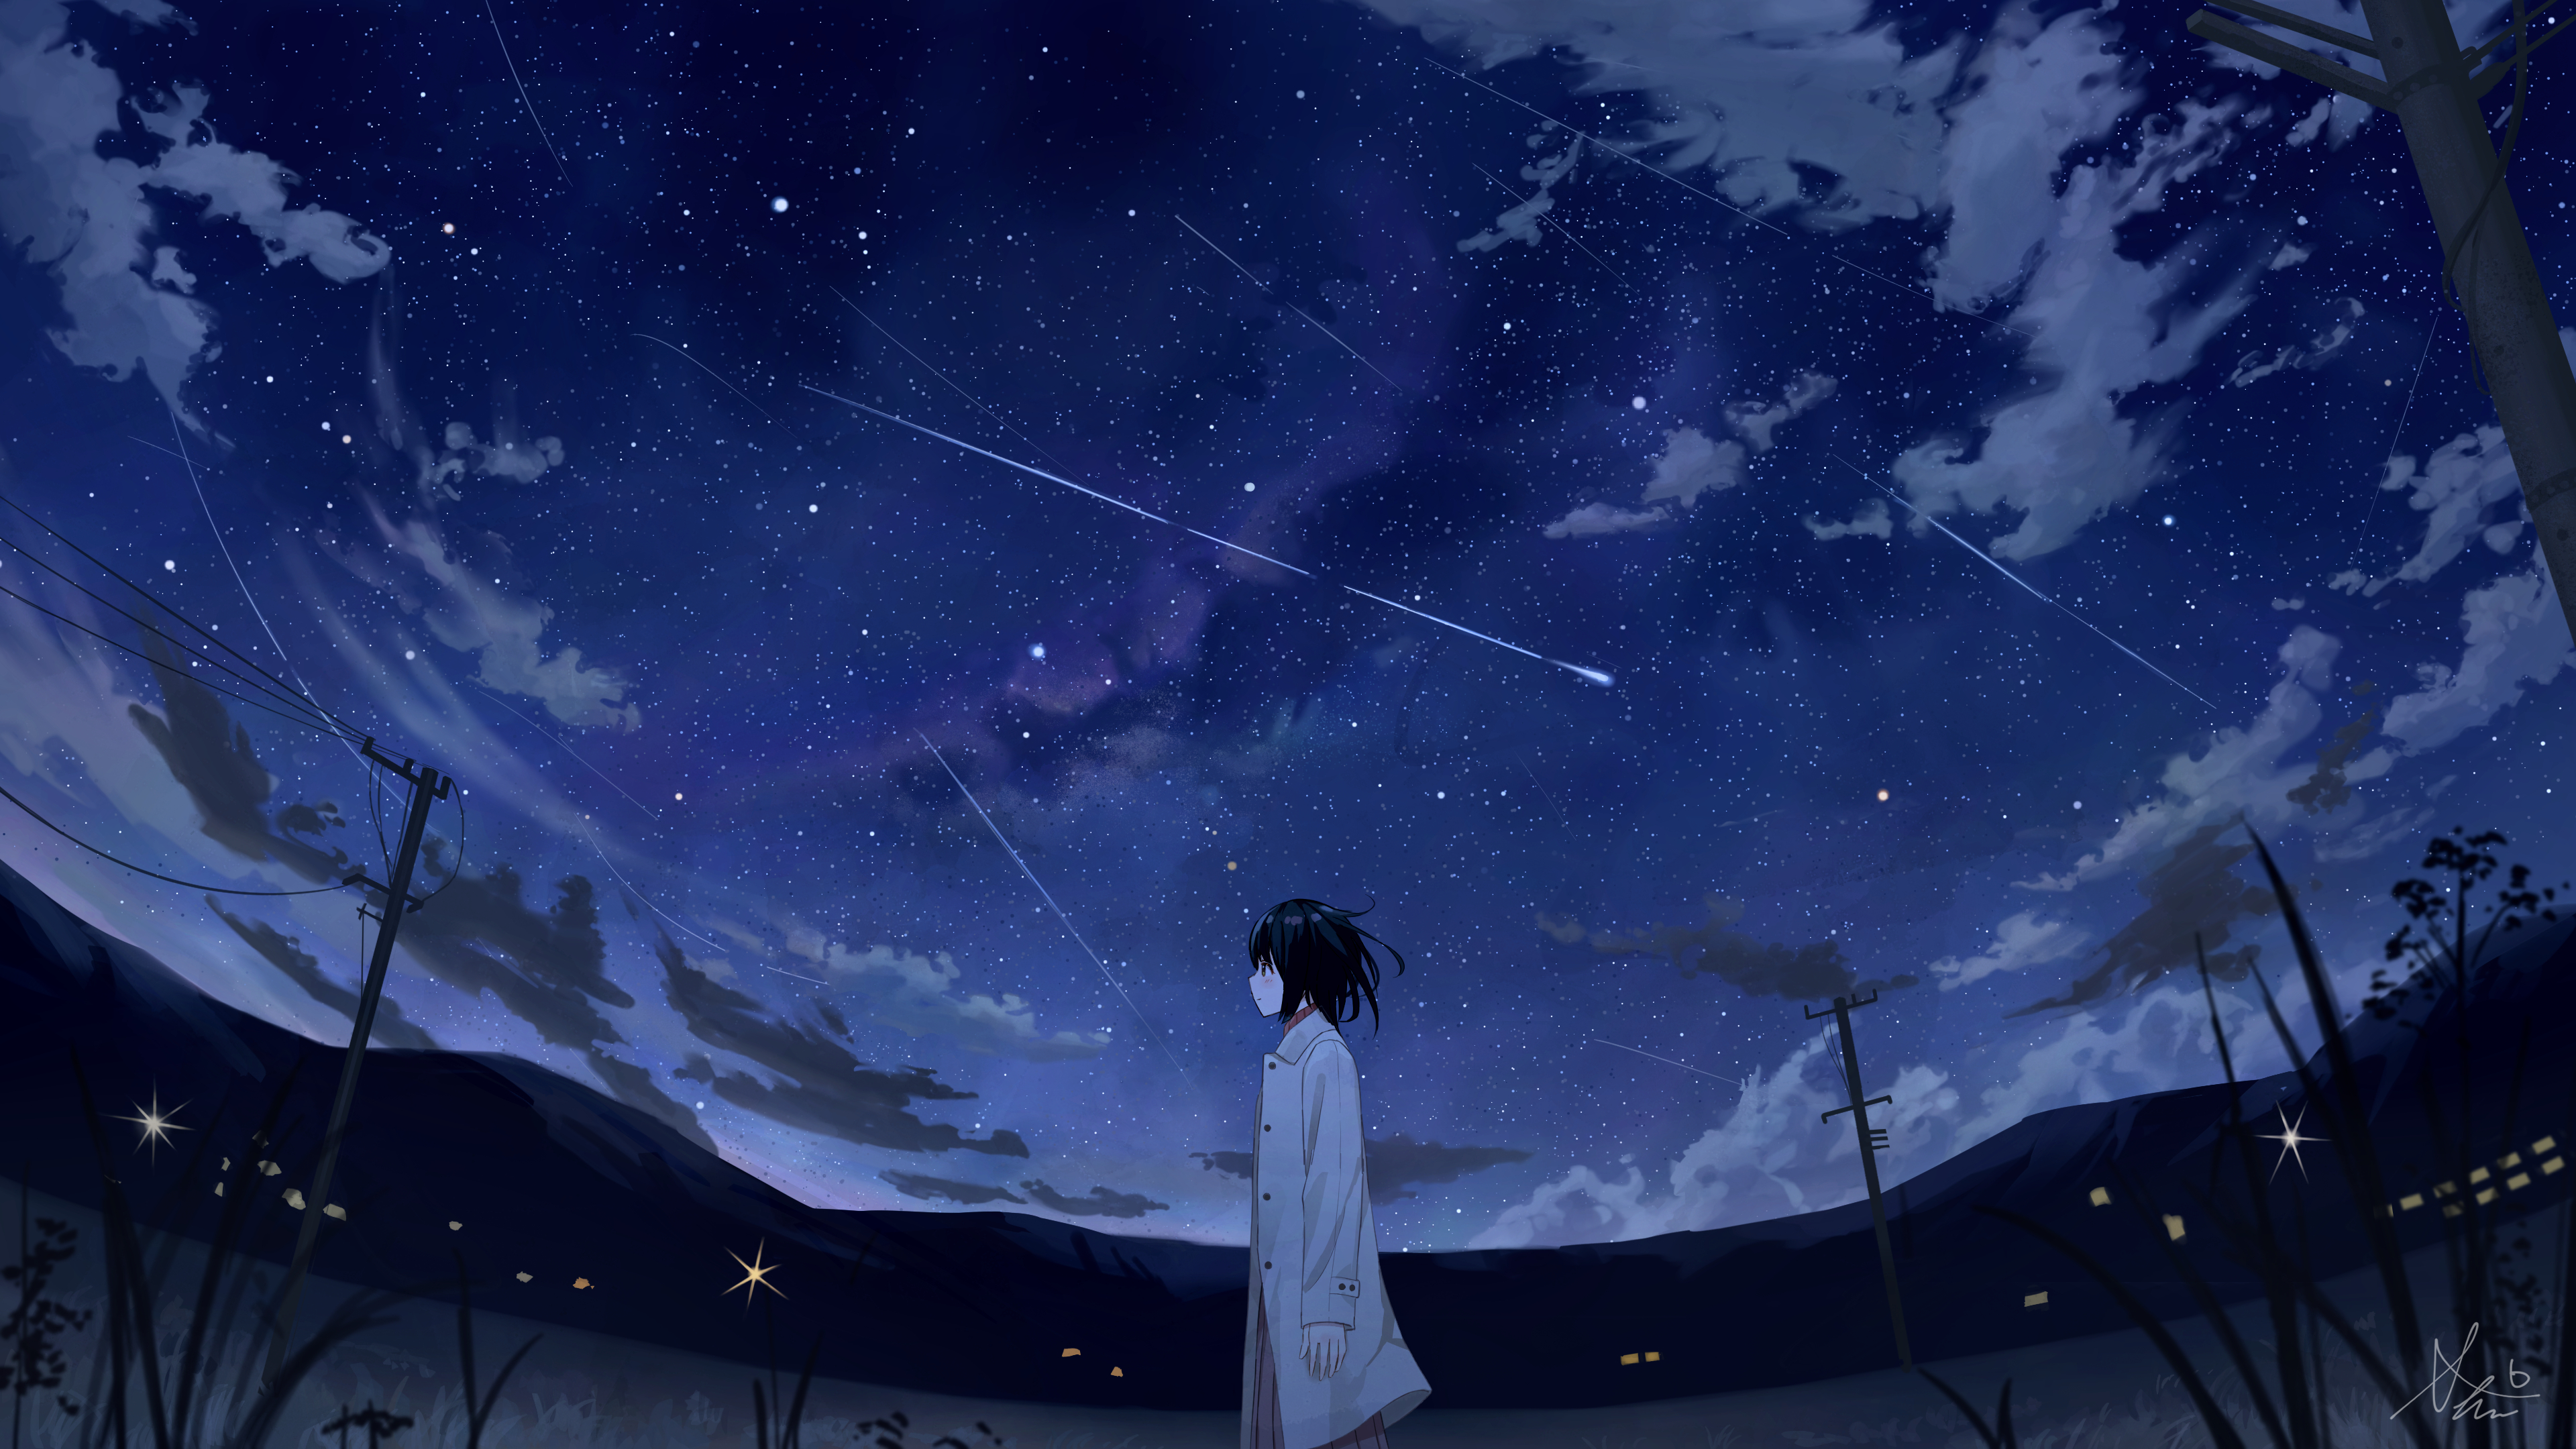 Скачать обои бесплатно Аниме, Ночь, Звездное Небо картинка на рабочий стол ПК